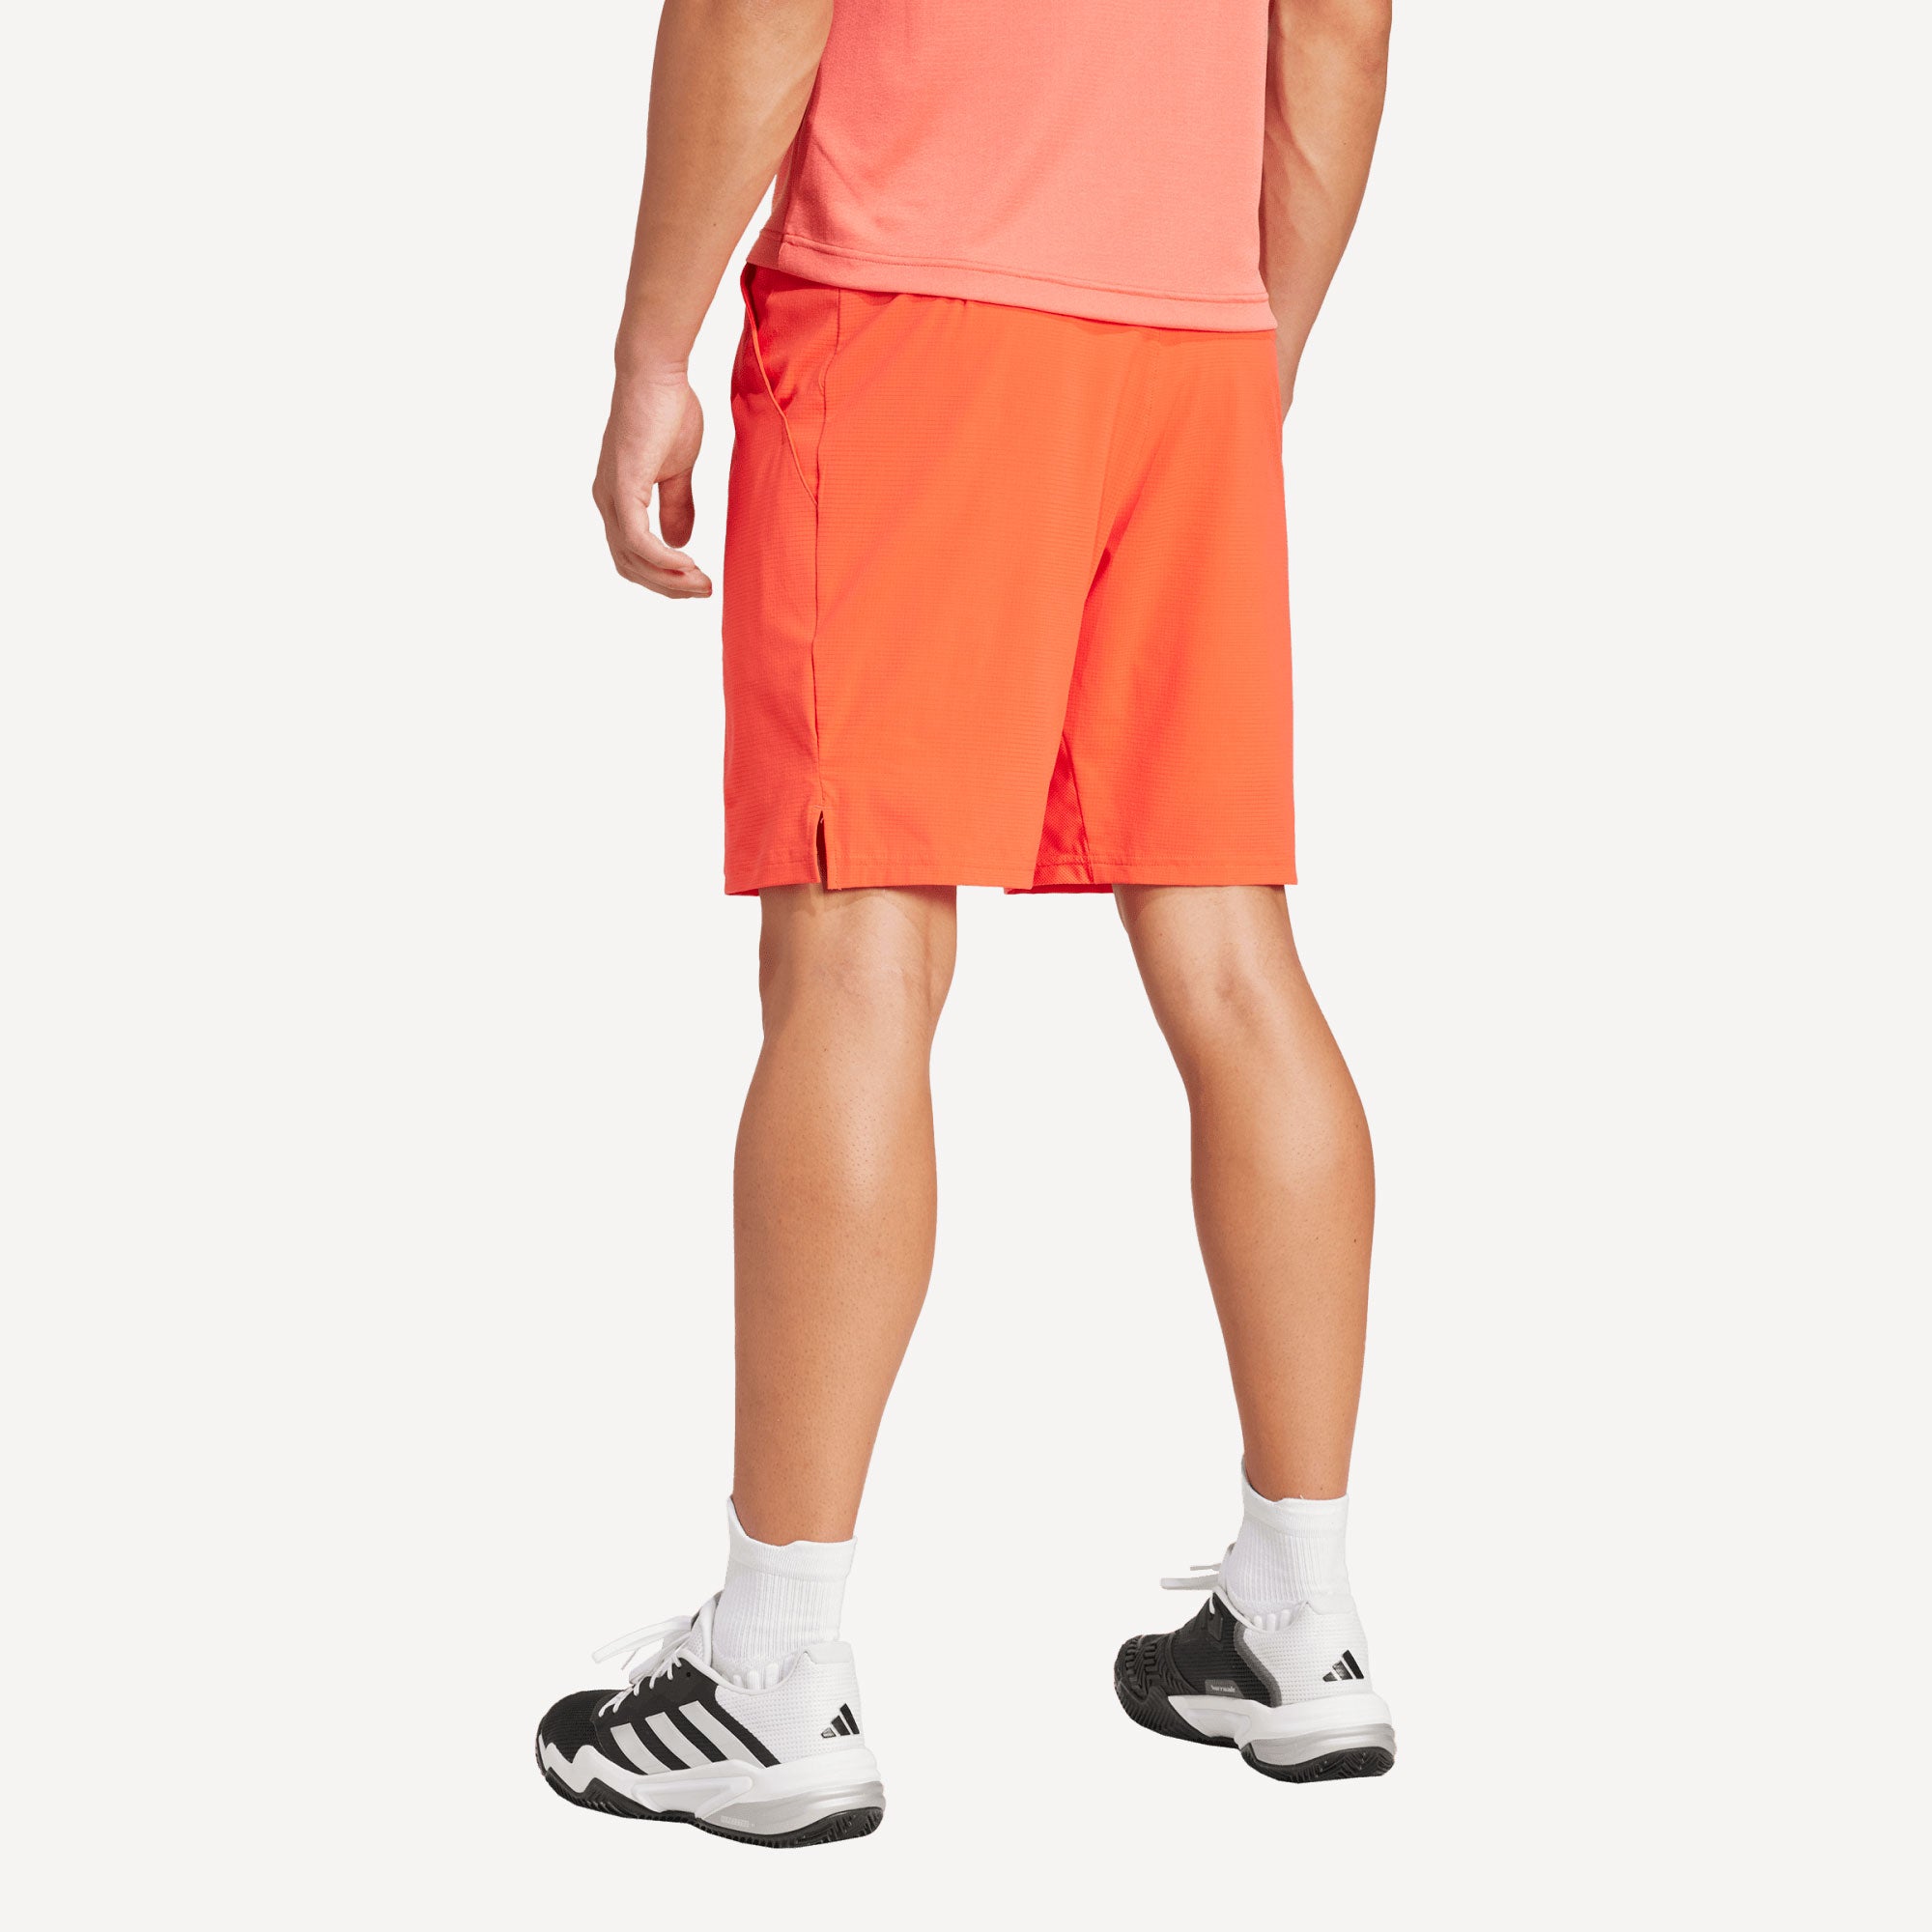 adidas Gameset Men's Ergo 7-Inch Tennis Shorts - Red (2)